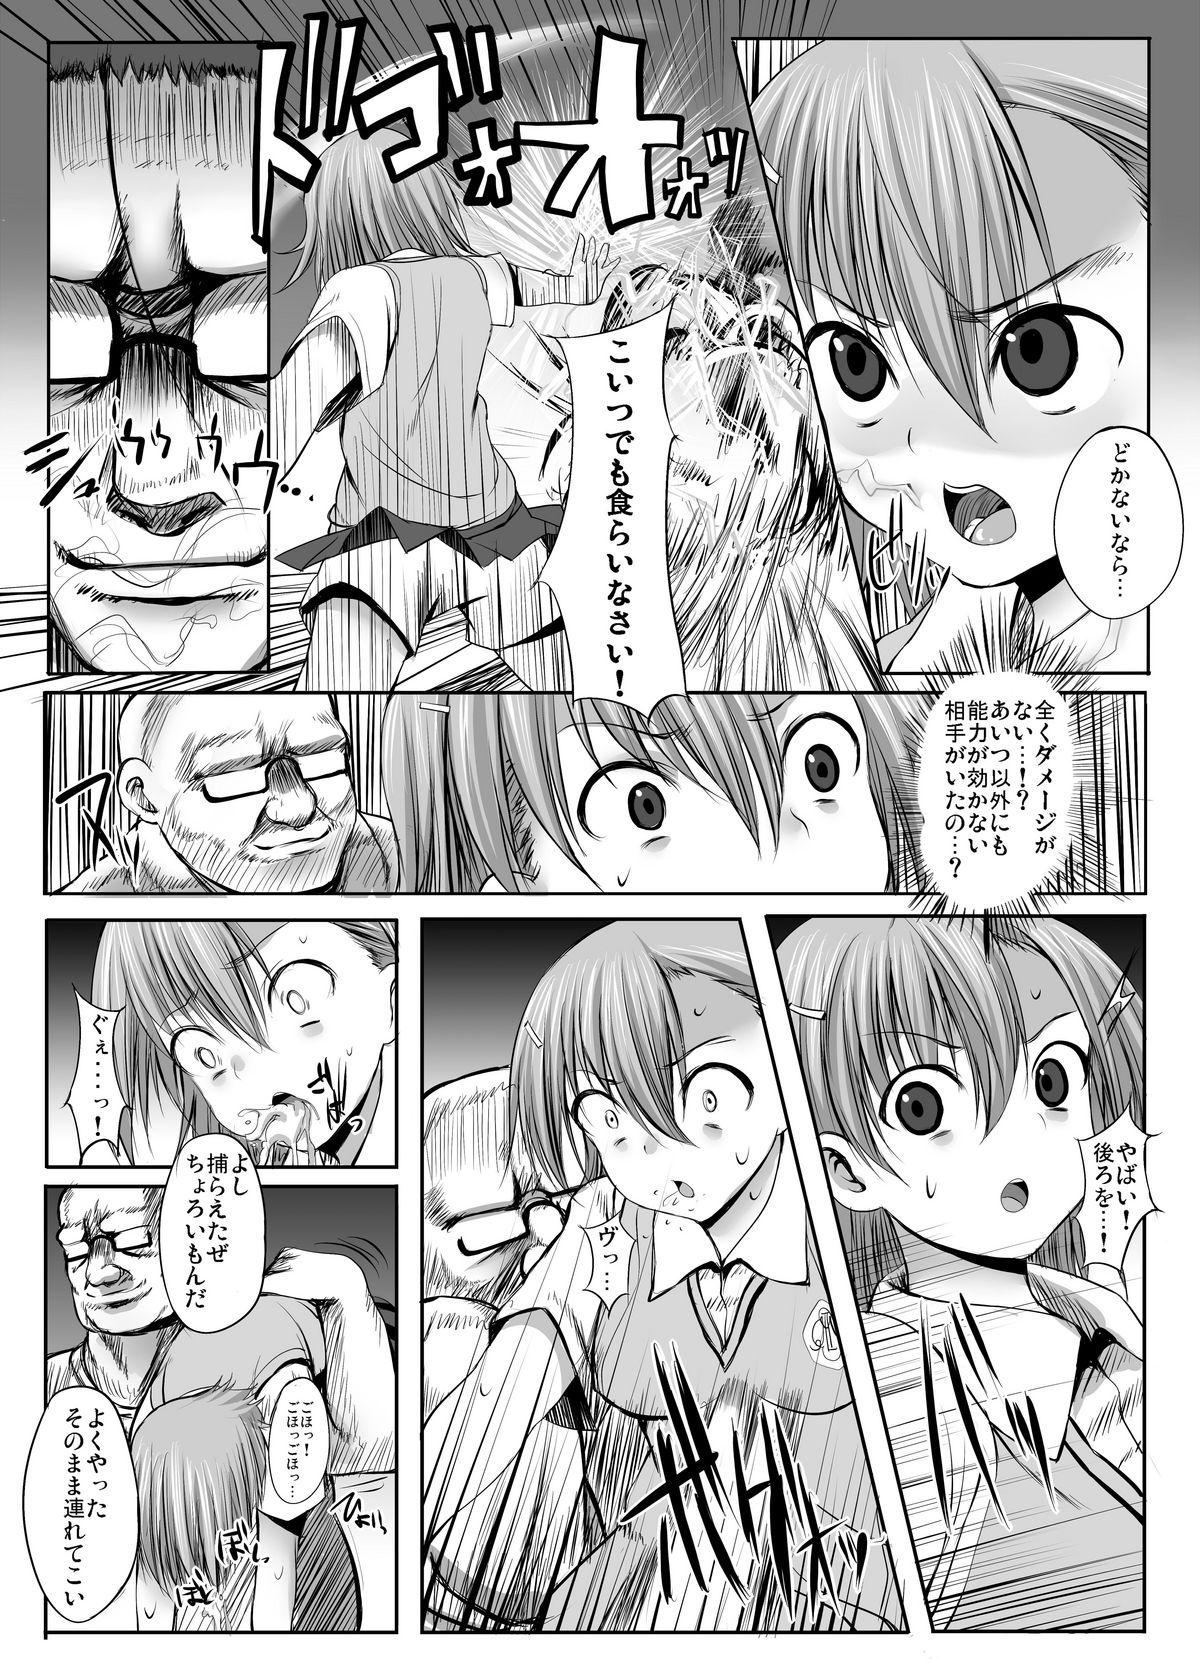 Abg ESP・BREAKER - Toaru kagaku no railgun Toaru majutsu no index Upskirt - Page 3